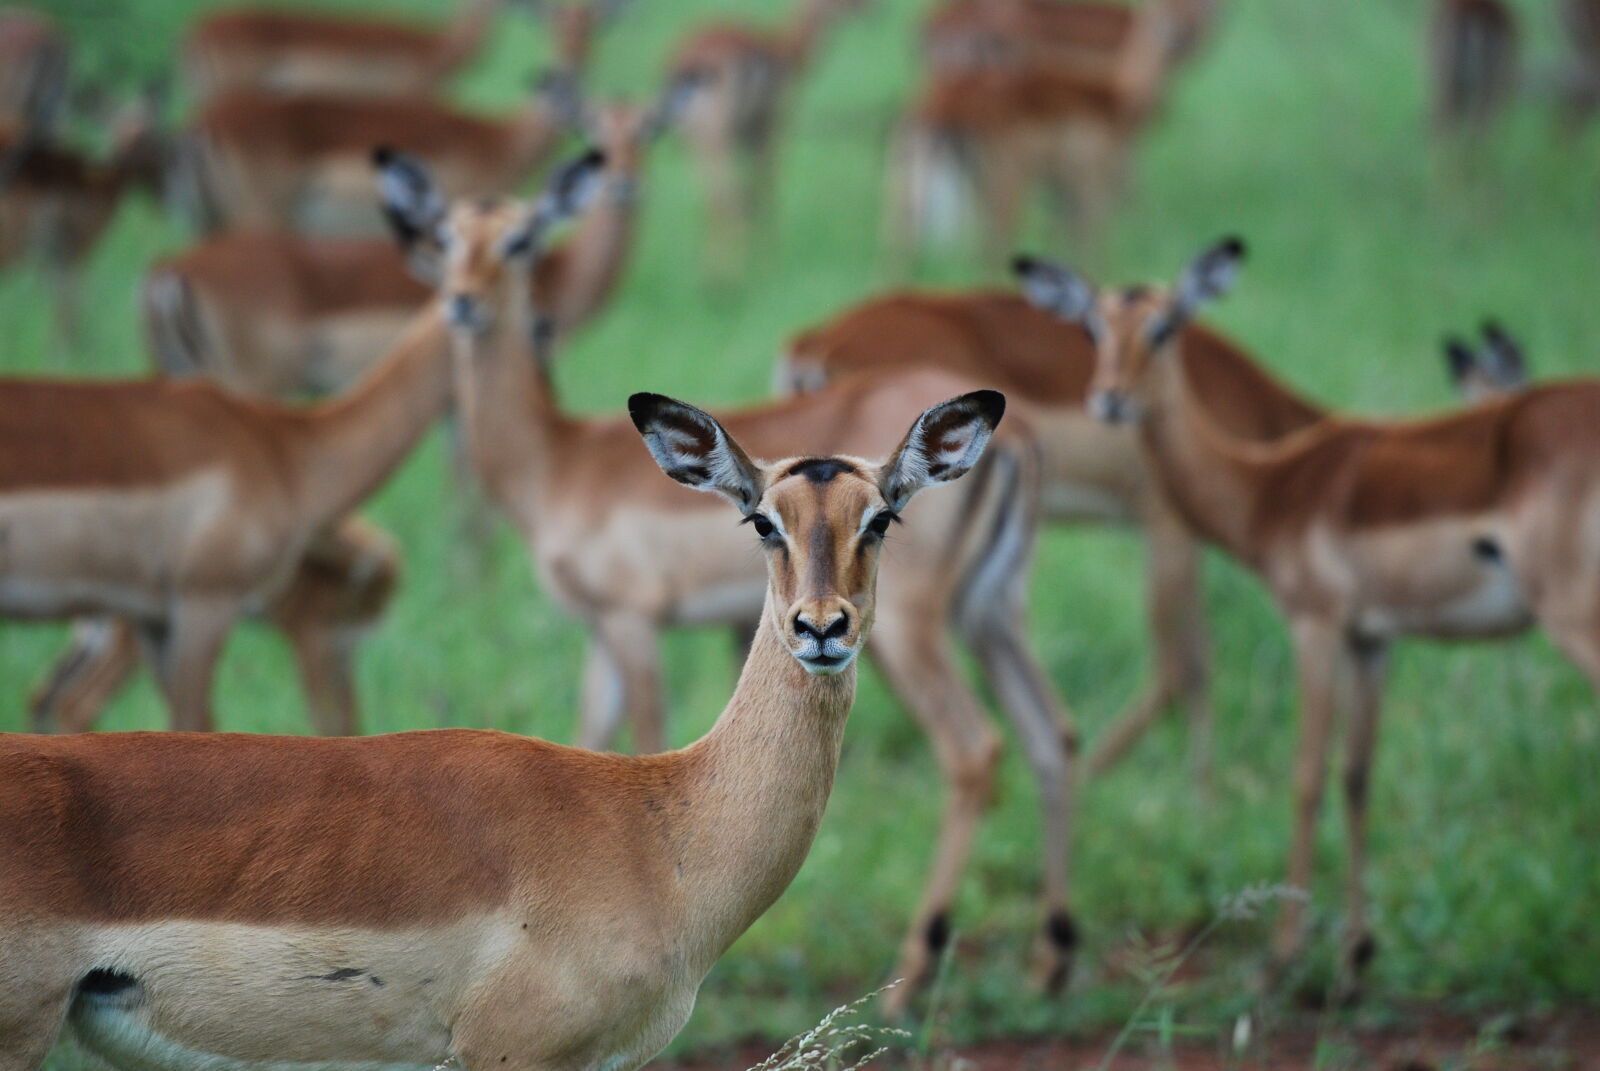 Nikon AF-S Nikkor 70-200mm F2.8G ED VR II sample photo. Animals, antelope, blur, deer photography